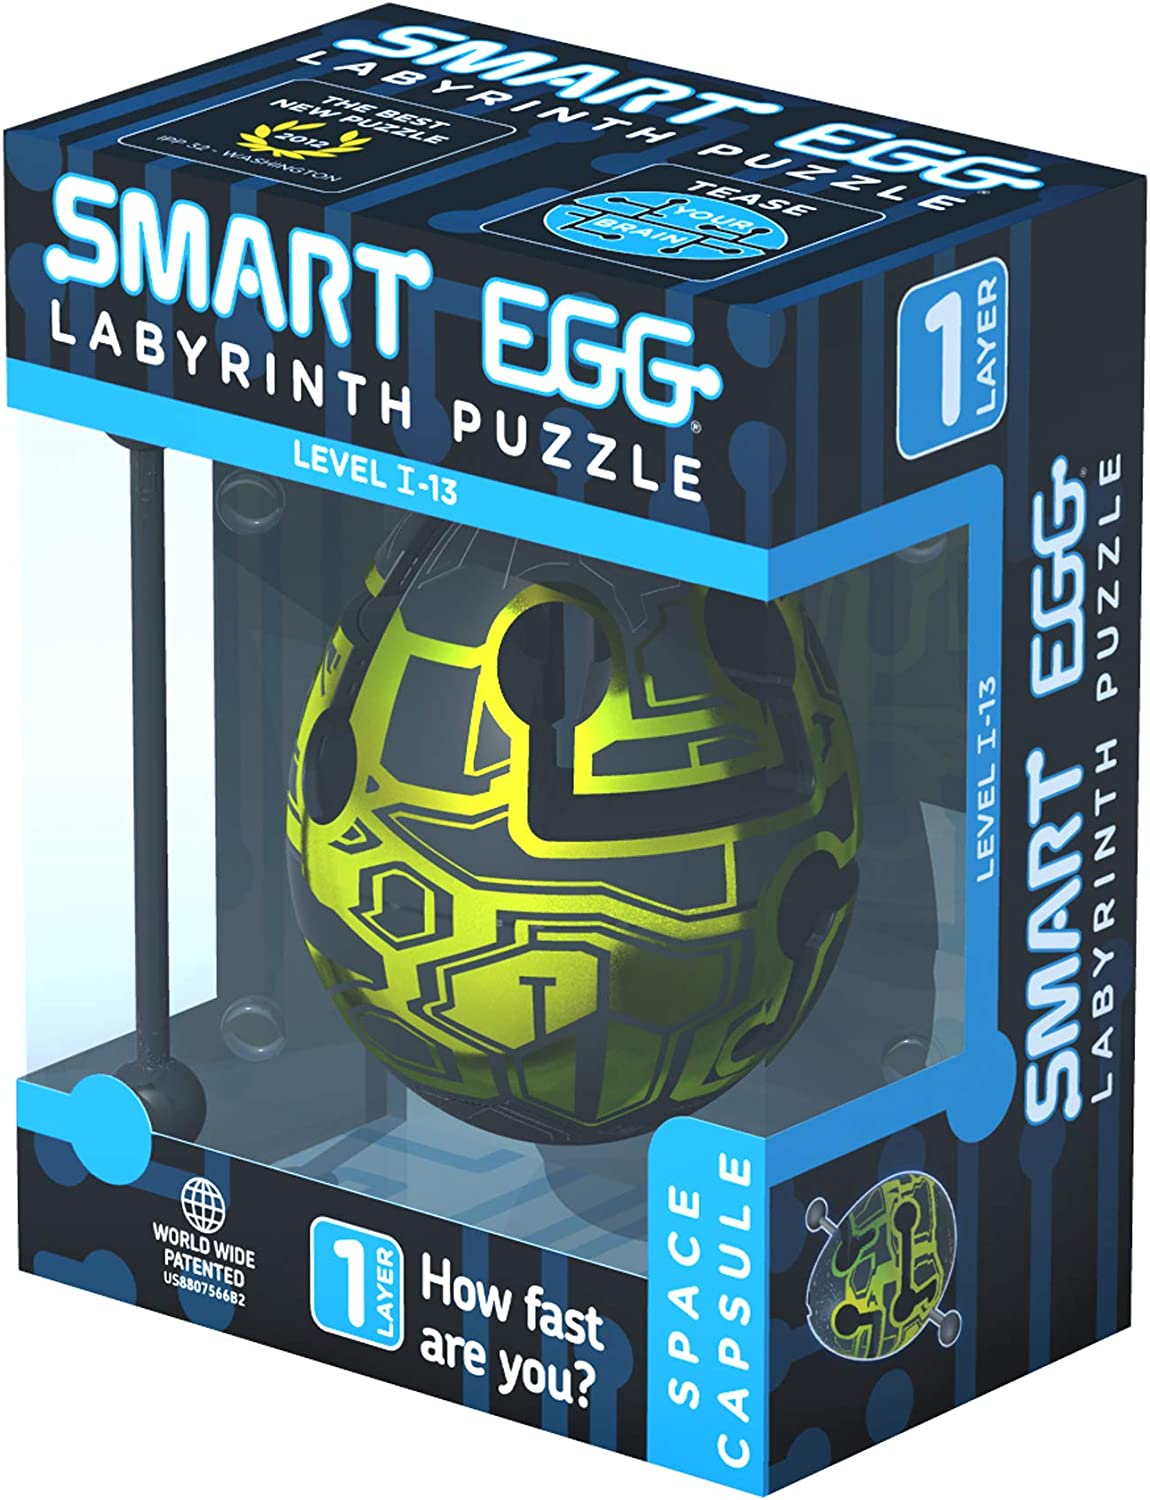 Puzzle en 3D - Space Capsule - Smart Egg